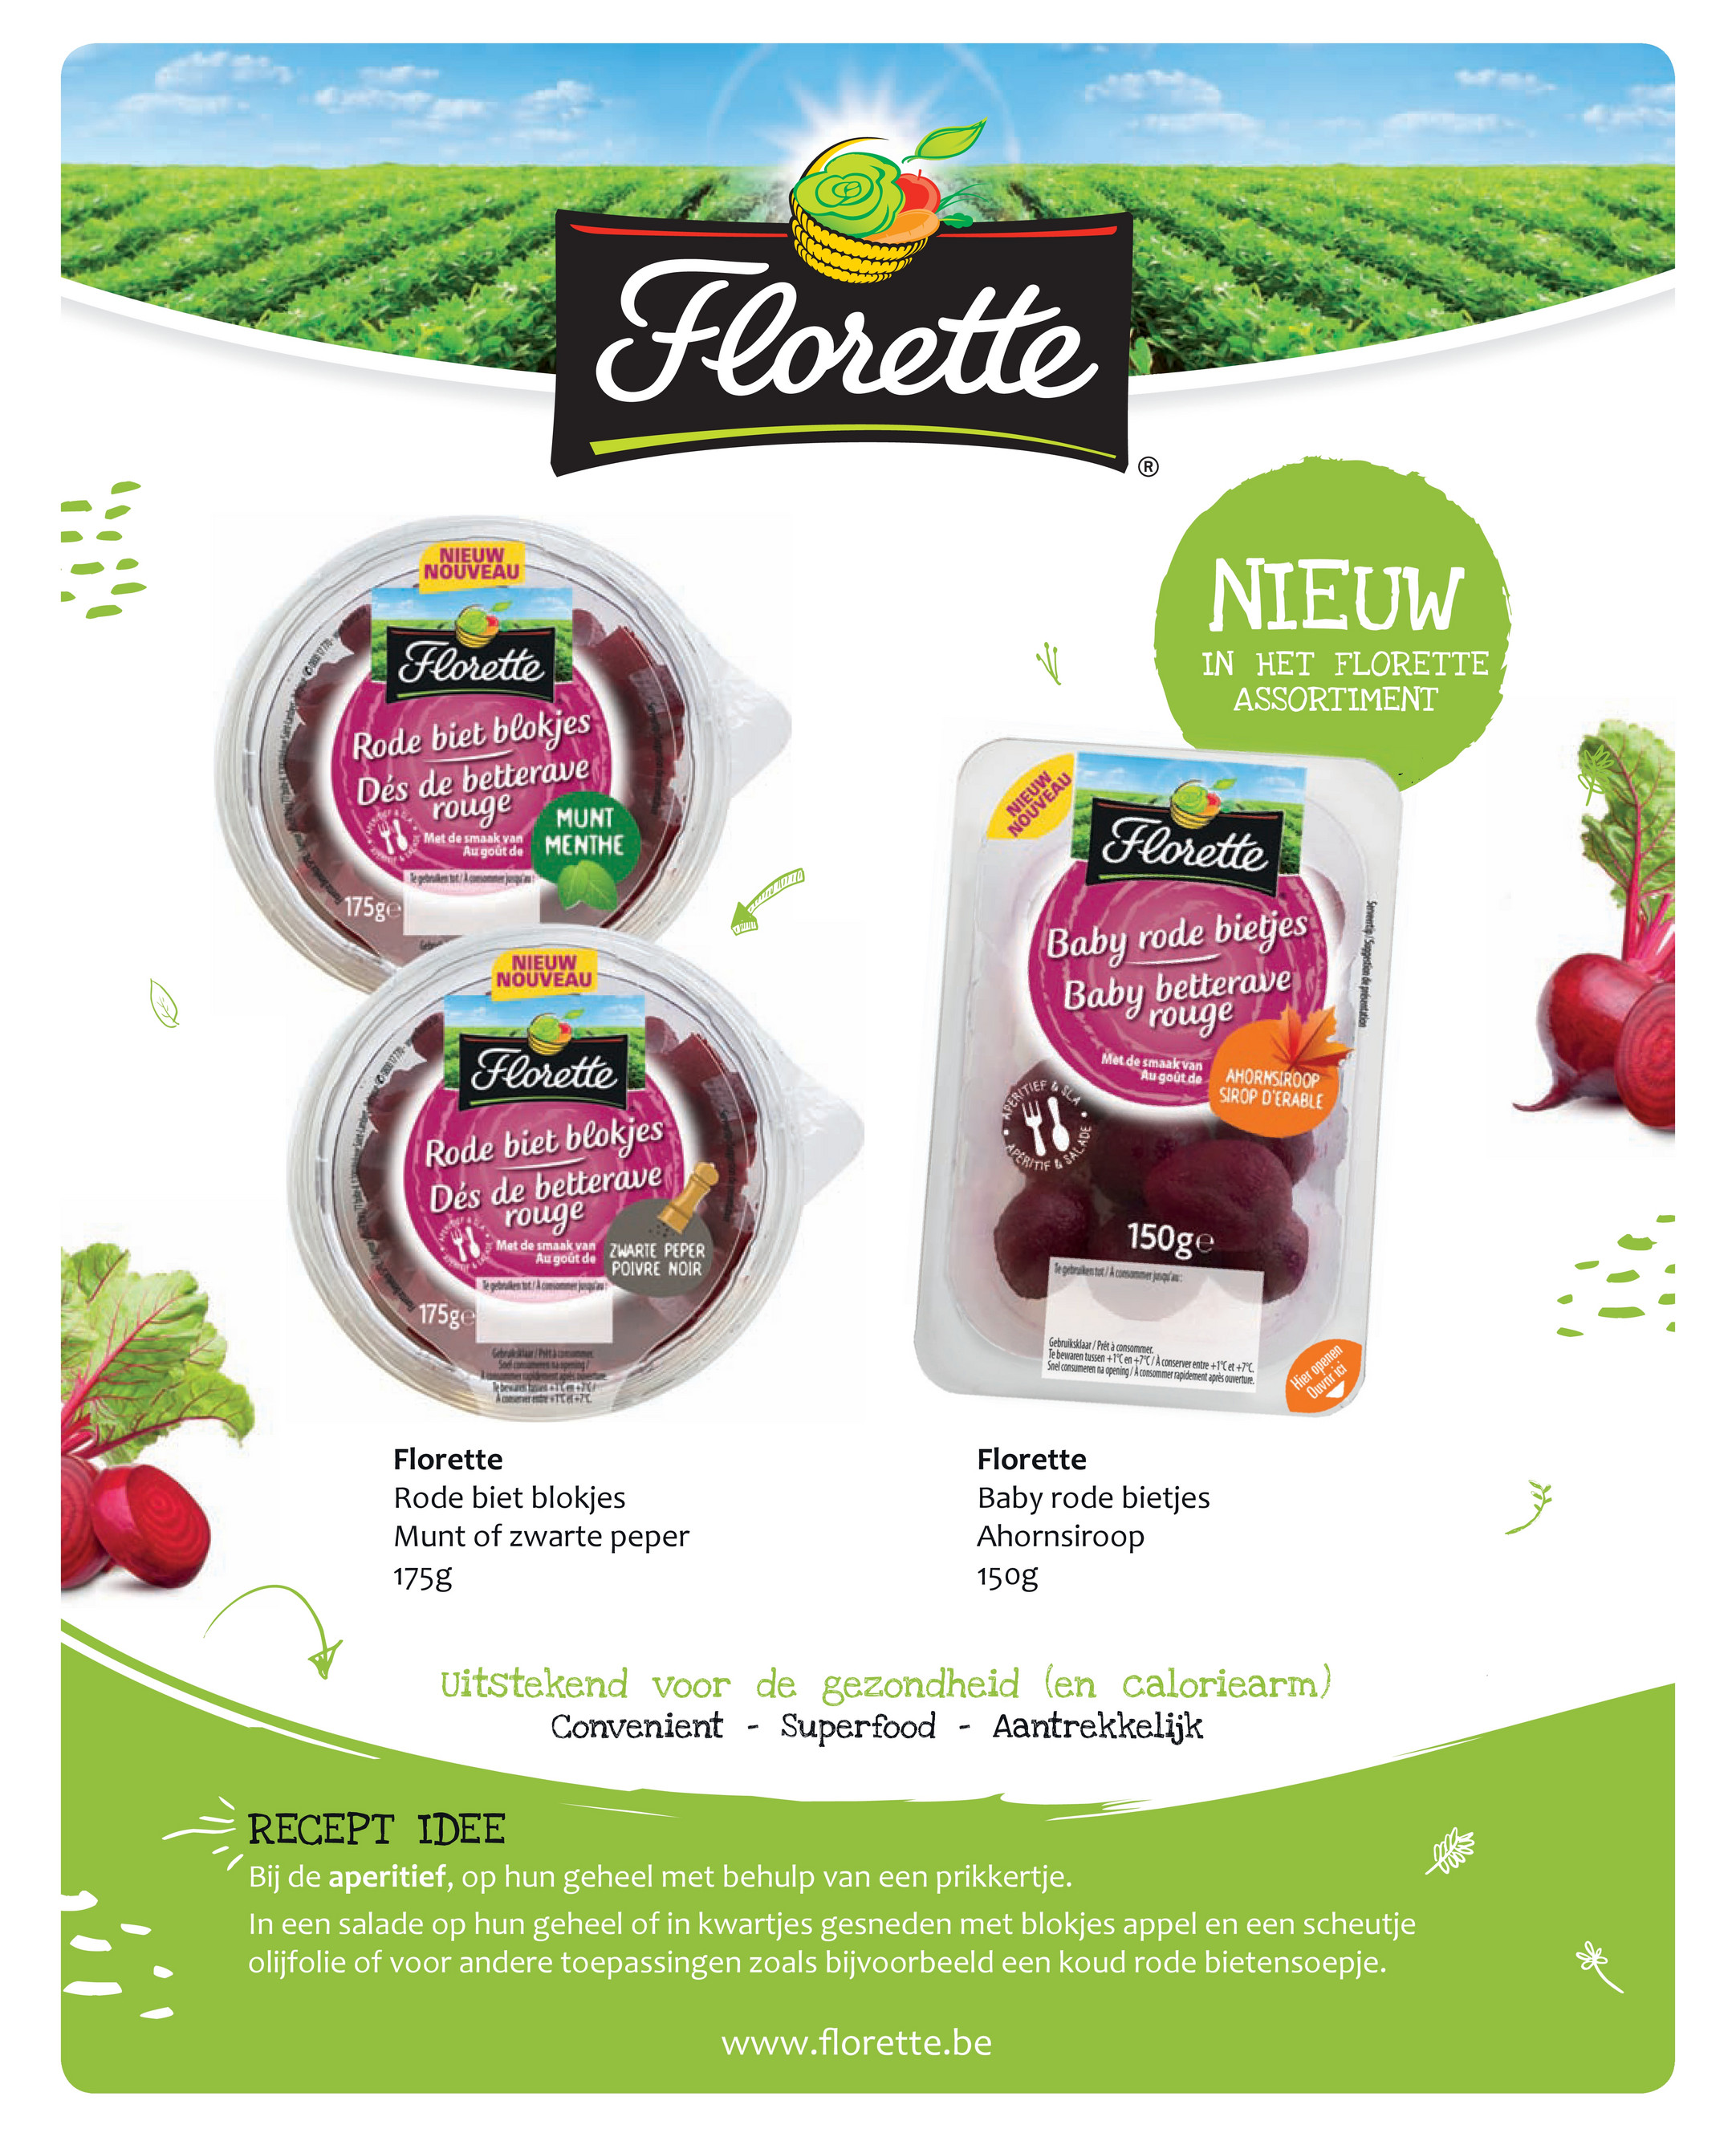 The label florette Jean de